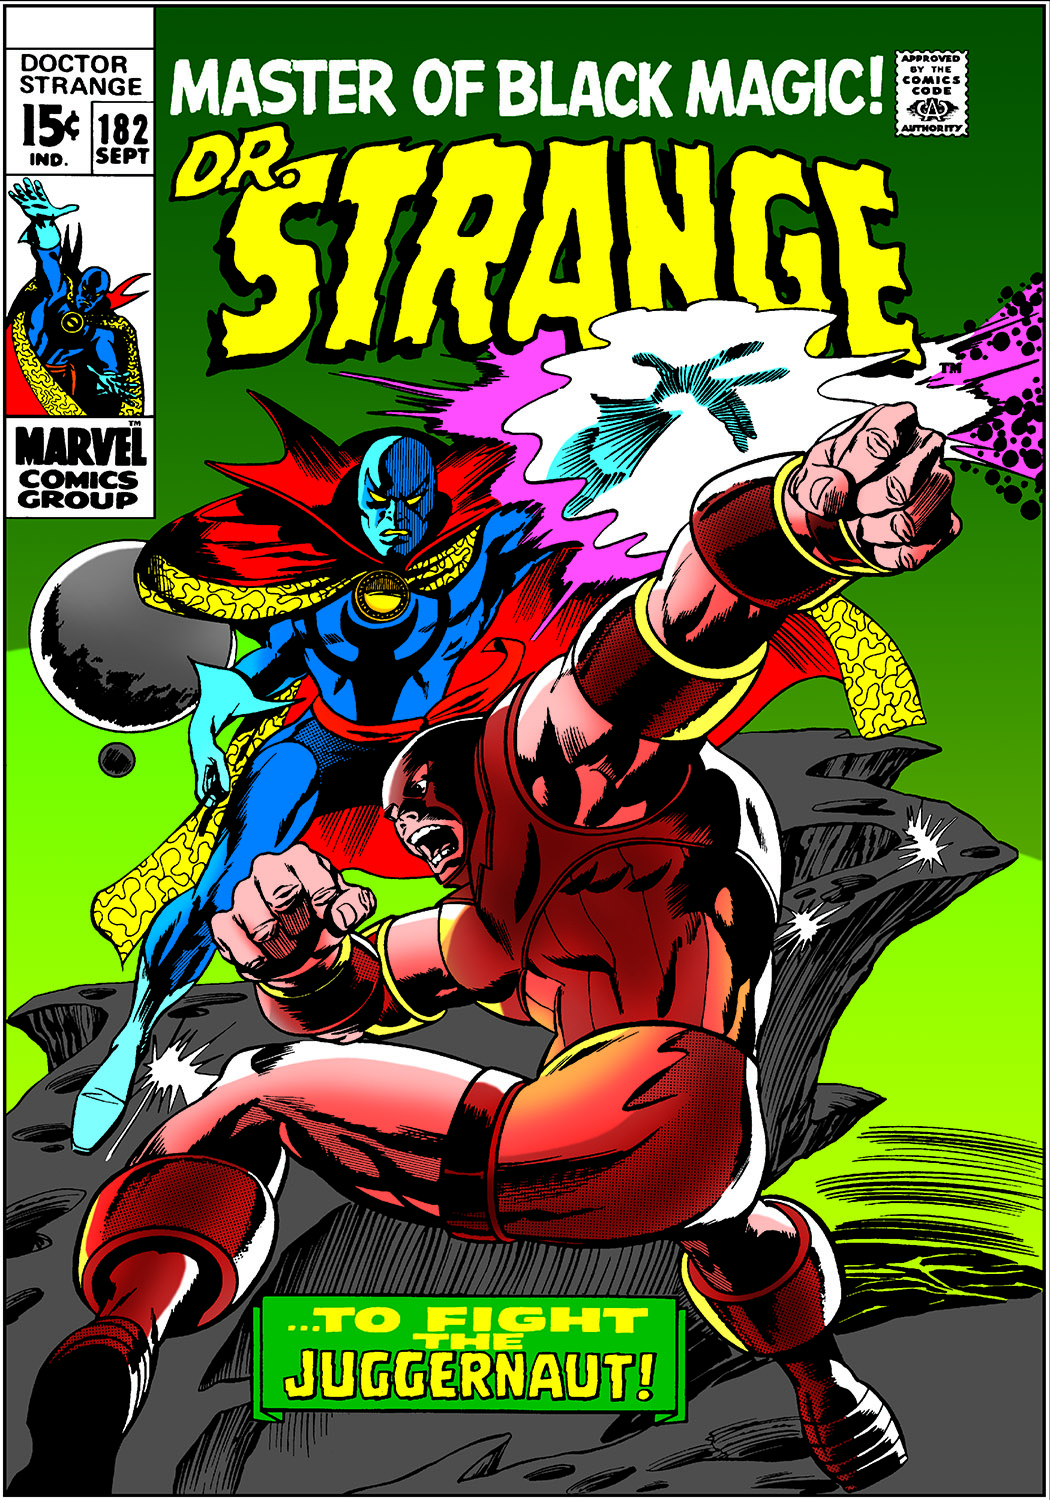 Doctor Strange (1968) #182